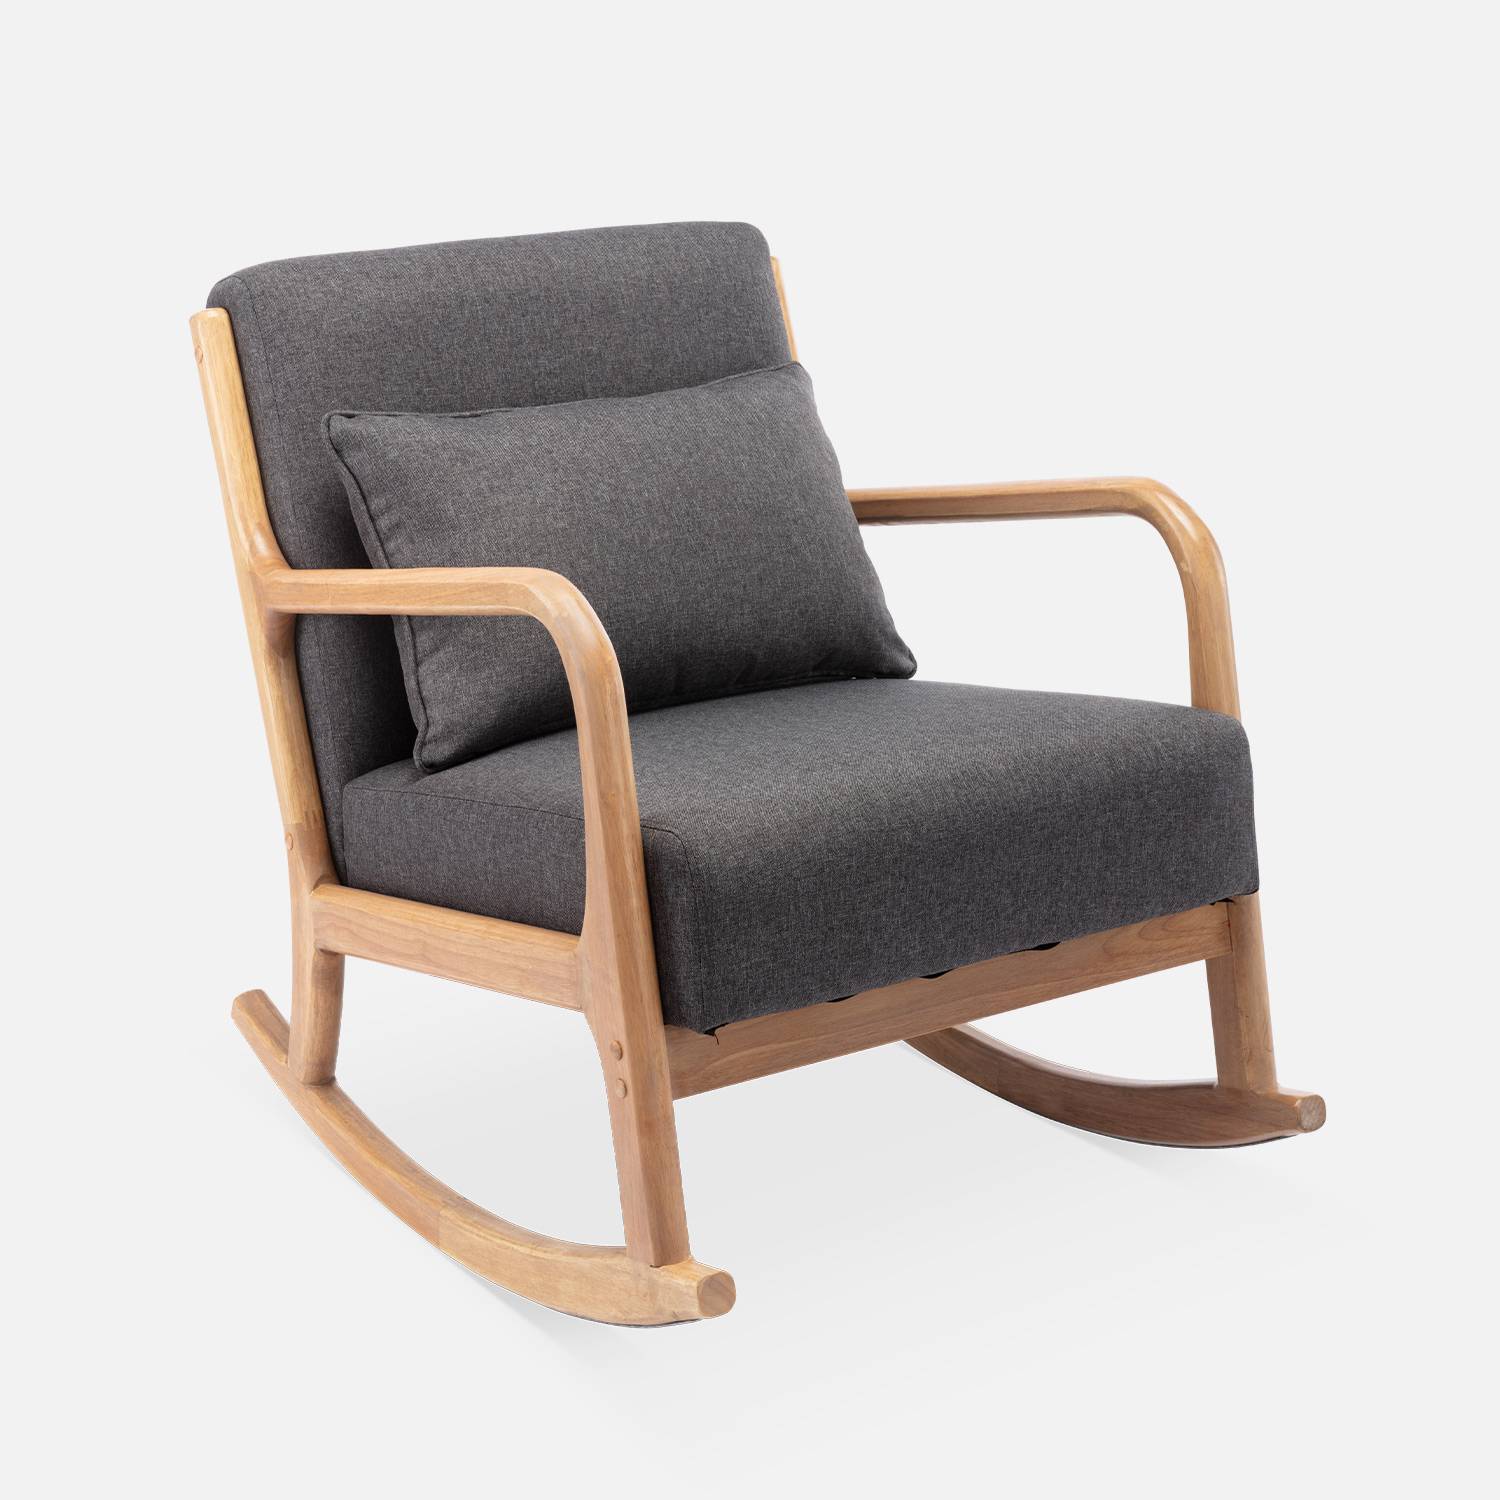 Fauteuil à bascule design en bois et tissu, 1 place, rocking chair scandinave, gris foncé Photo3